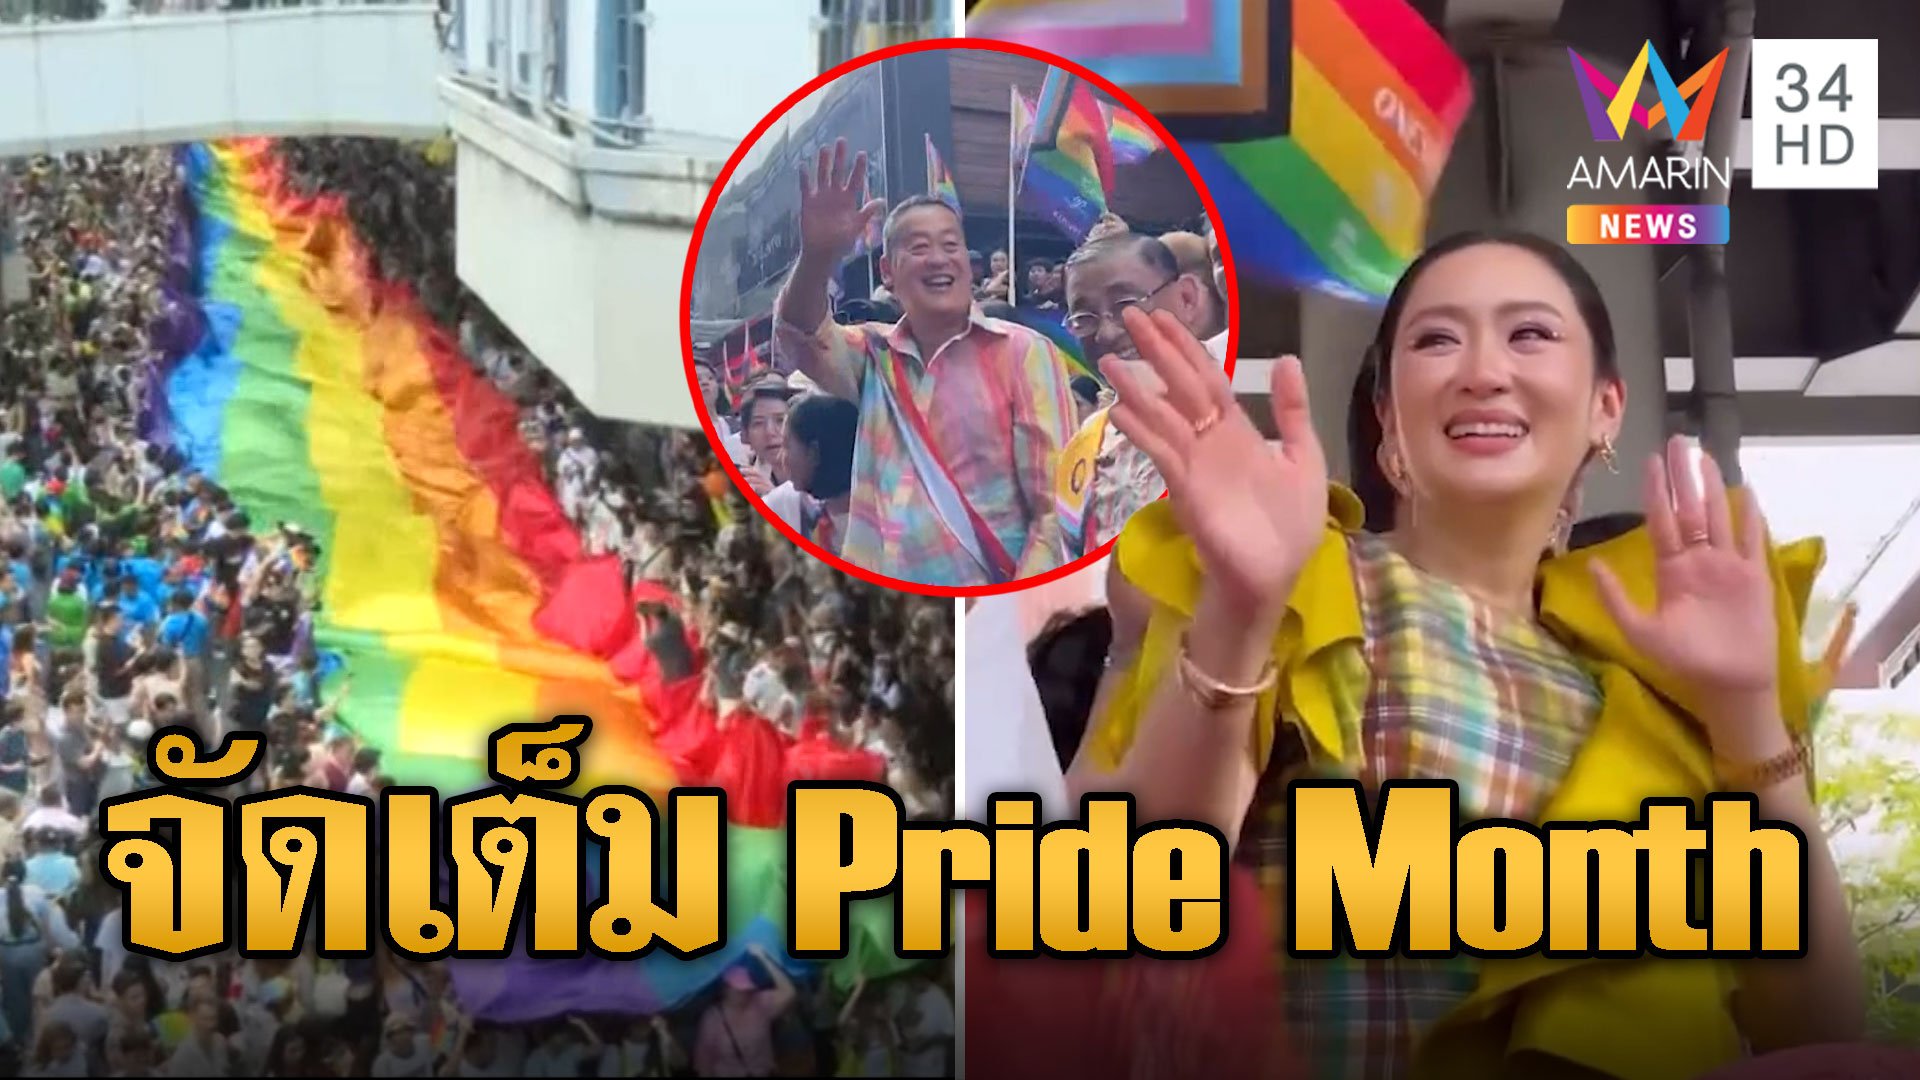 ยิ่งใหญ่อลังการ! "เศรษฐา-อุ๊งอิ๊ง-พิธา" จัดเต็มร่วมขบวน Pride Month  | ข่าวอรุณอมรินทร์ | 2 มิ.ย. 67 | AMARIN TVHD34